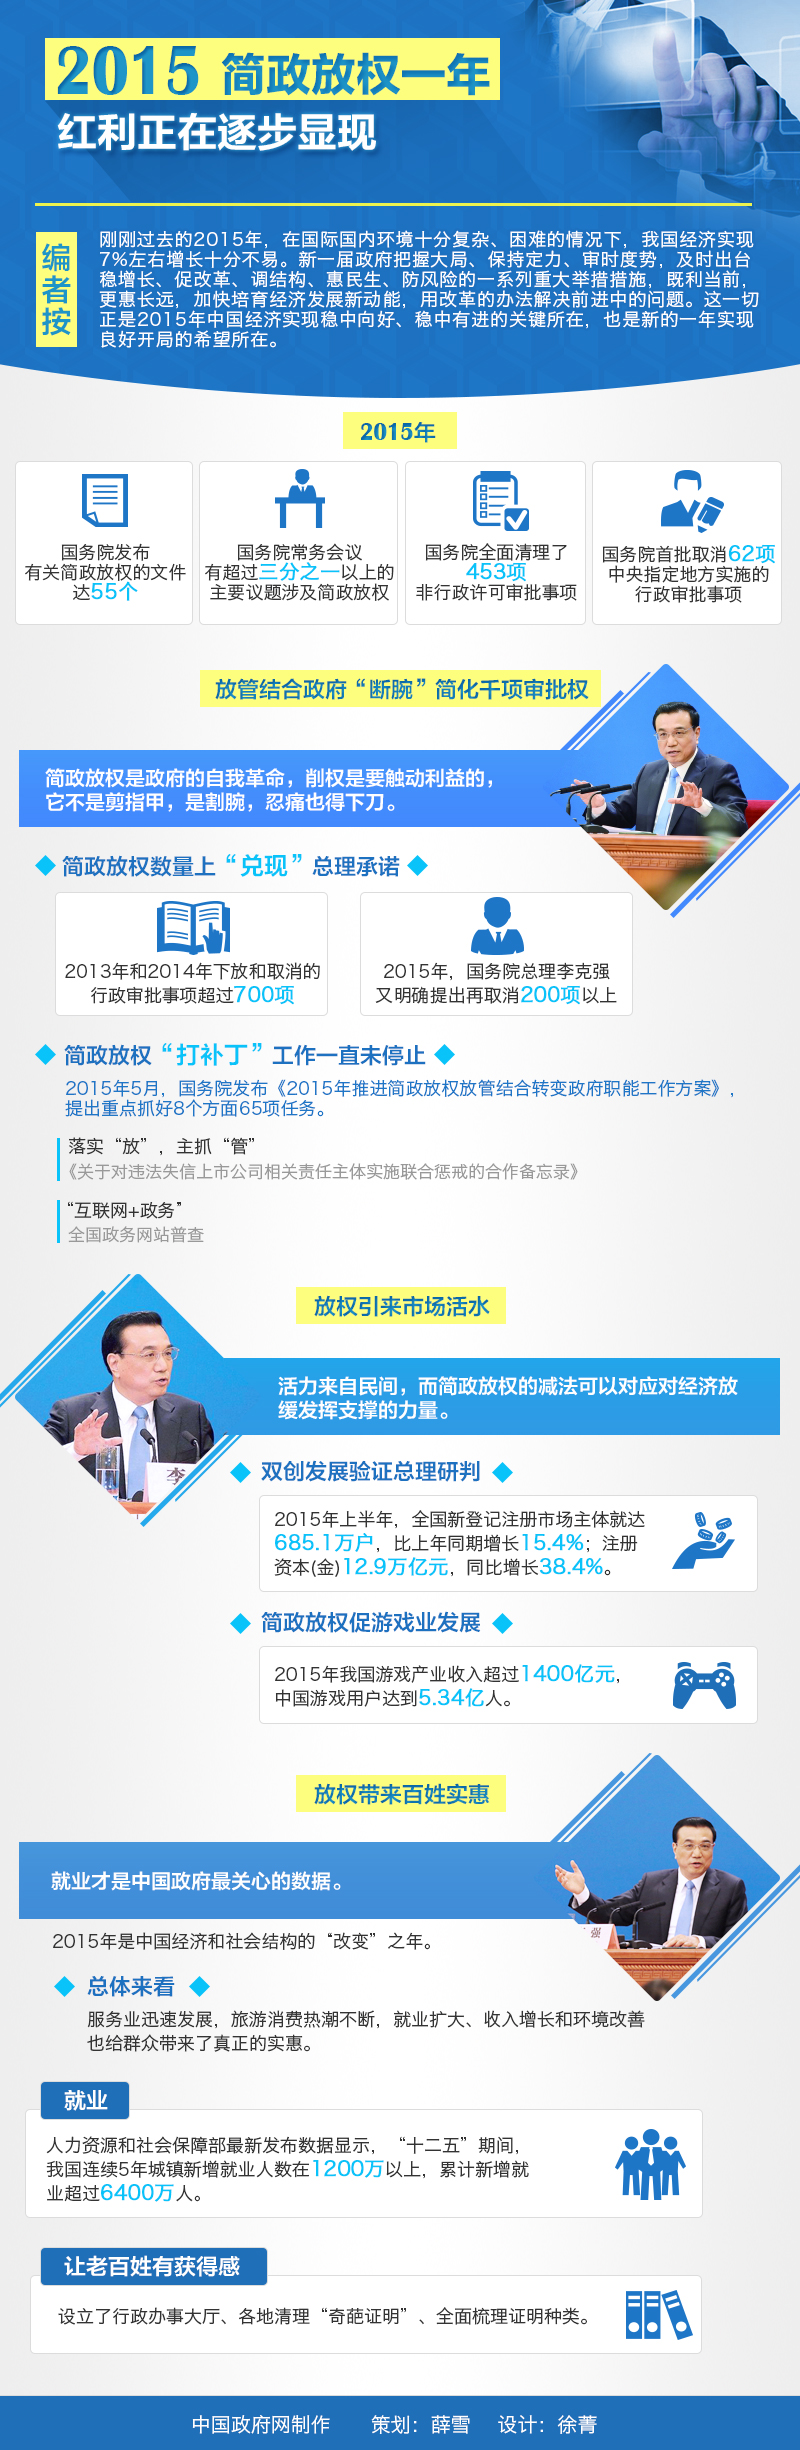 2015简政放权一年 红利正在逐步显现 中国政府网制作 策划：薛雪 设计：徐菁